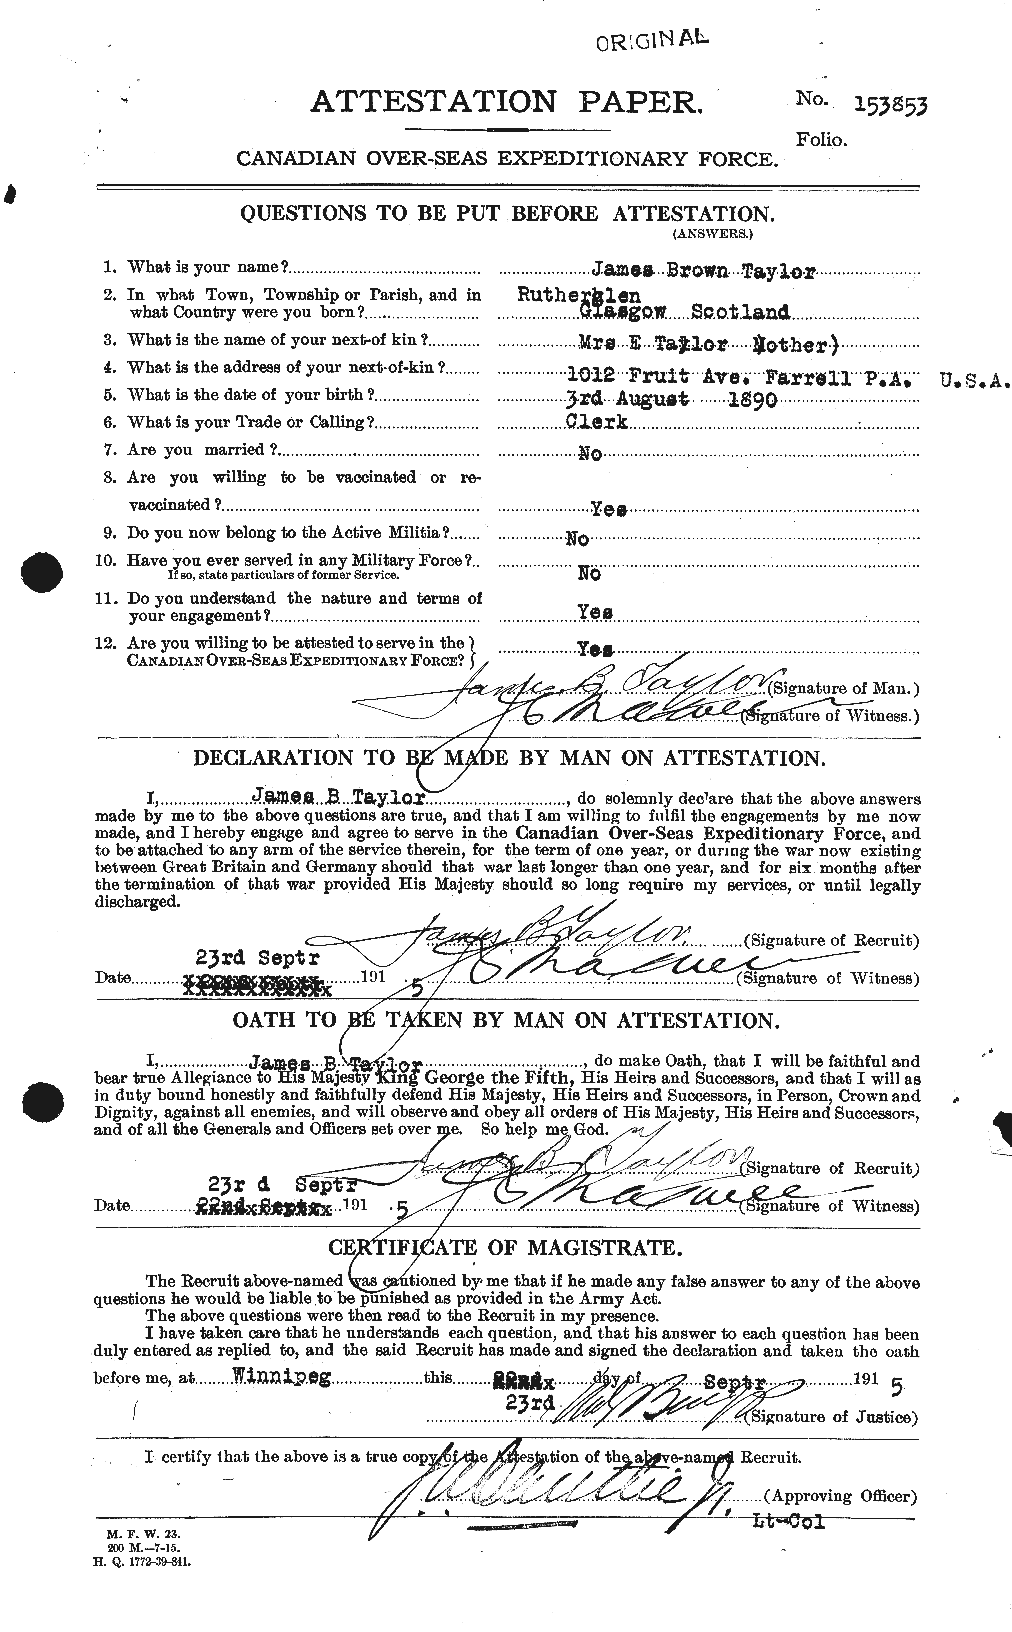 Dossiers du Personnel de la Première Guerre mondiale - CEC 626908a